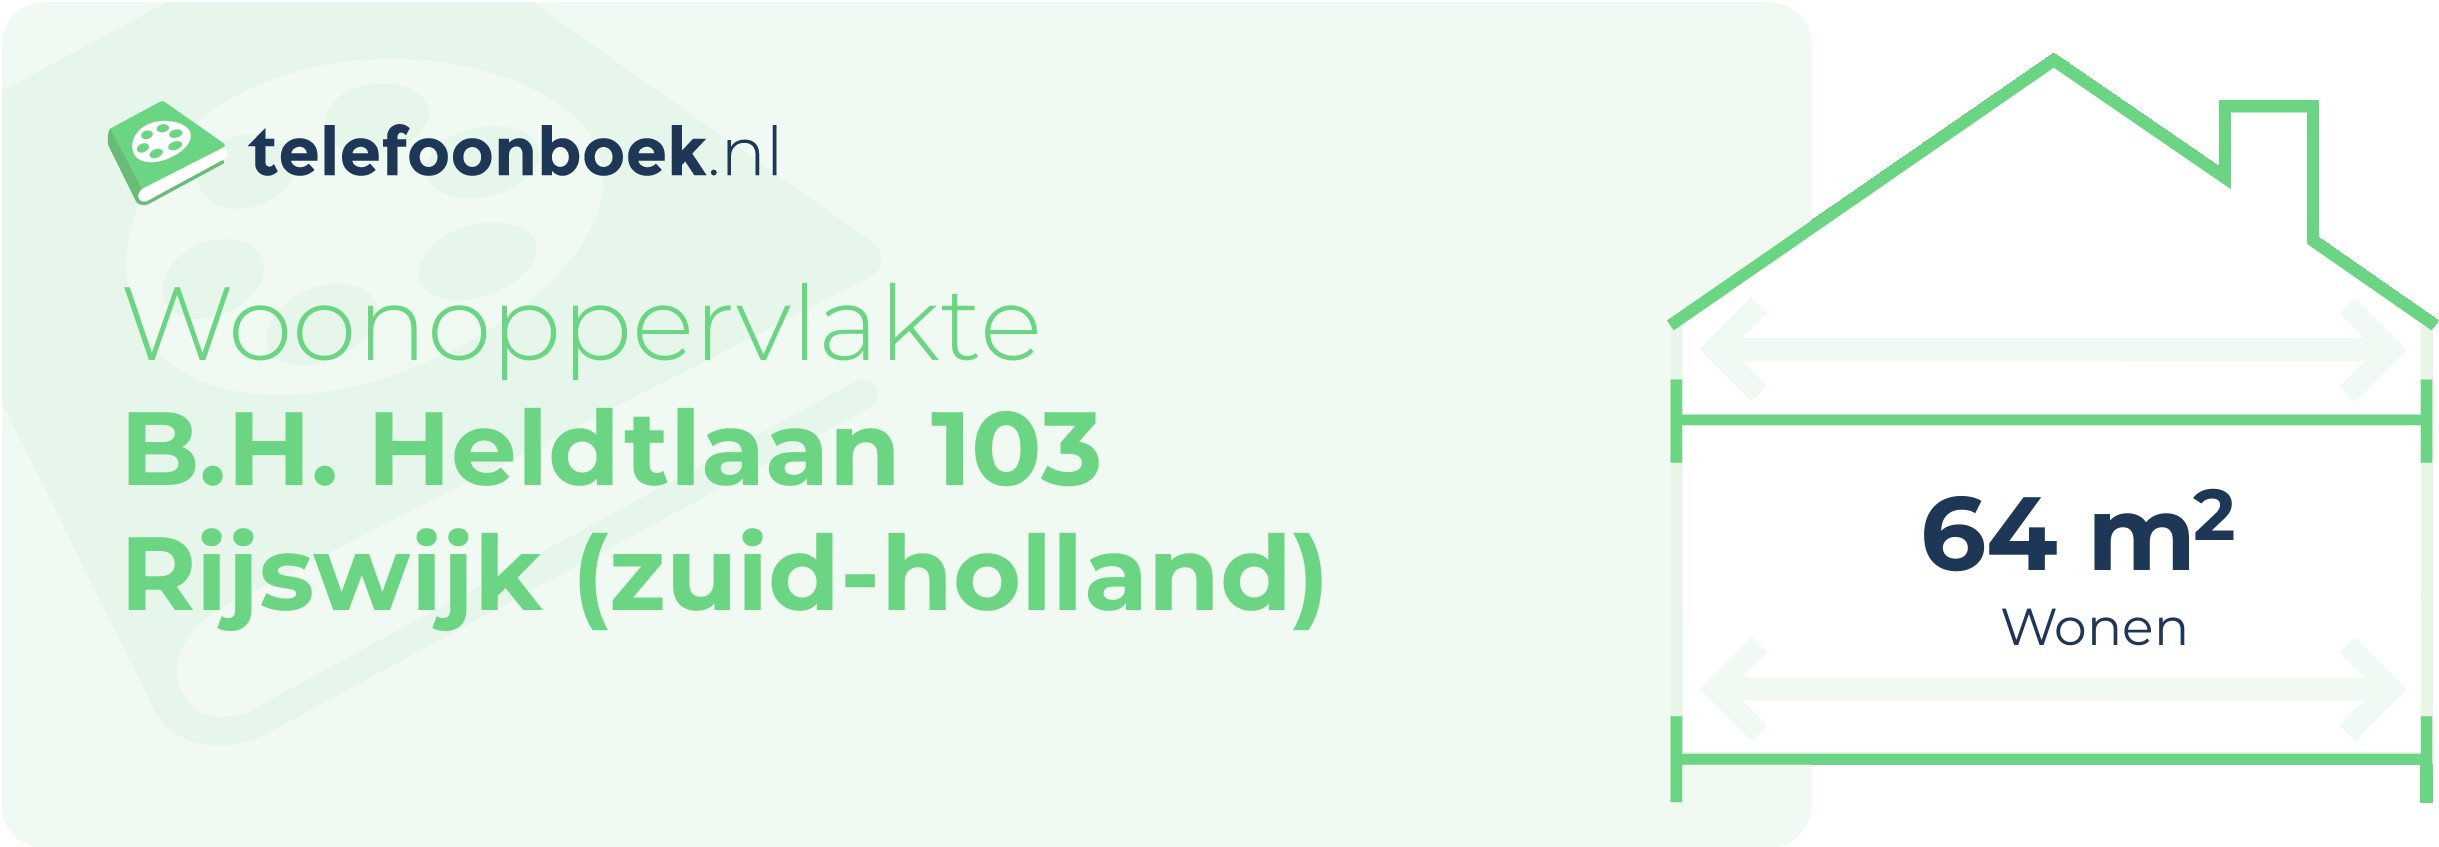 Woonoppervlakte B.H. Heldtlaan 103 Rijswijk (Zuid-Holland)